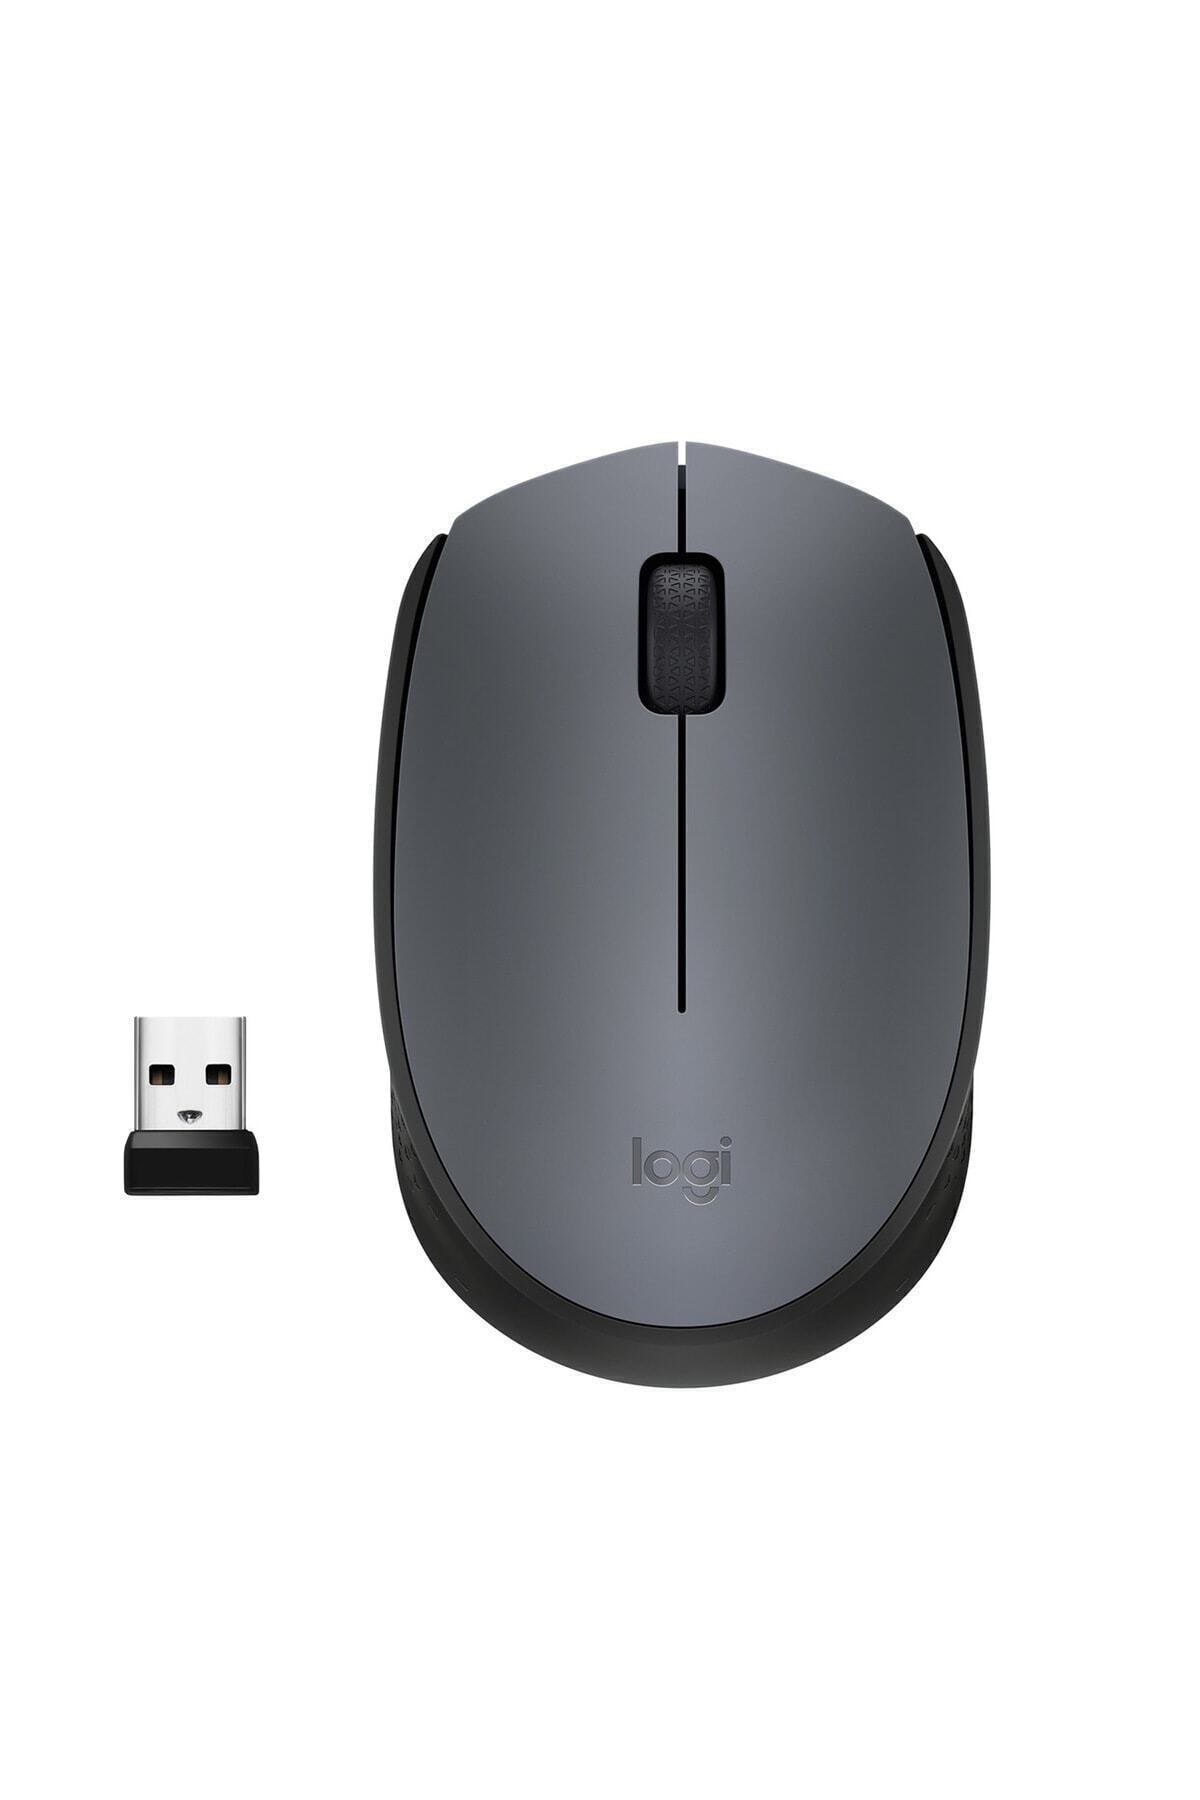 M170 USB Alıcılı Kablosuz Mouse - Gri 910-004642